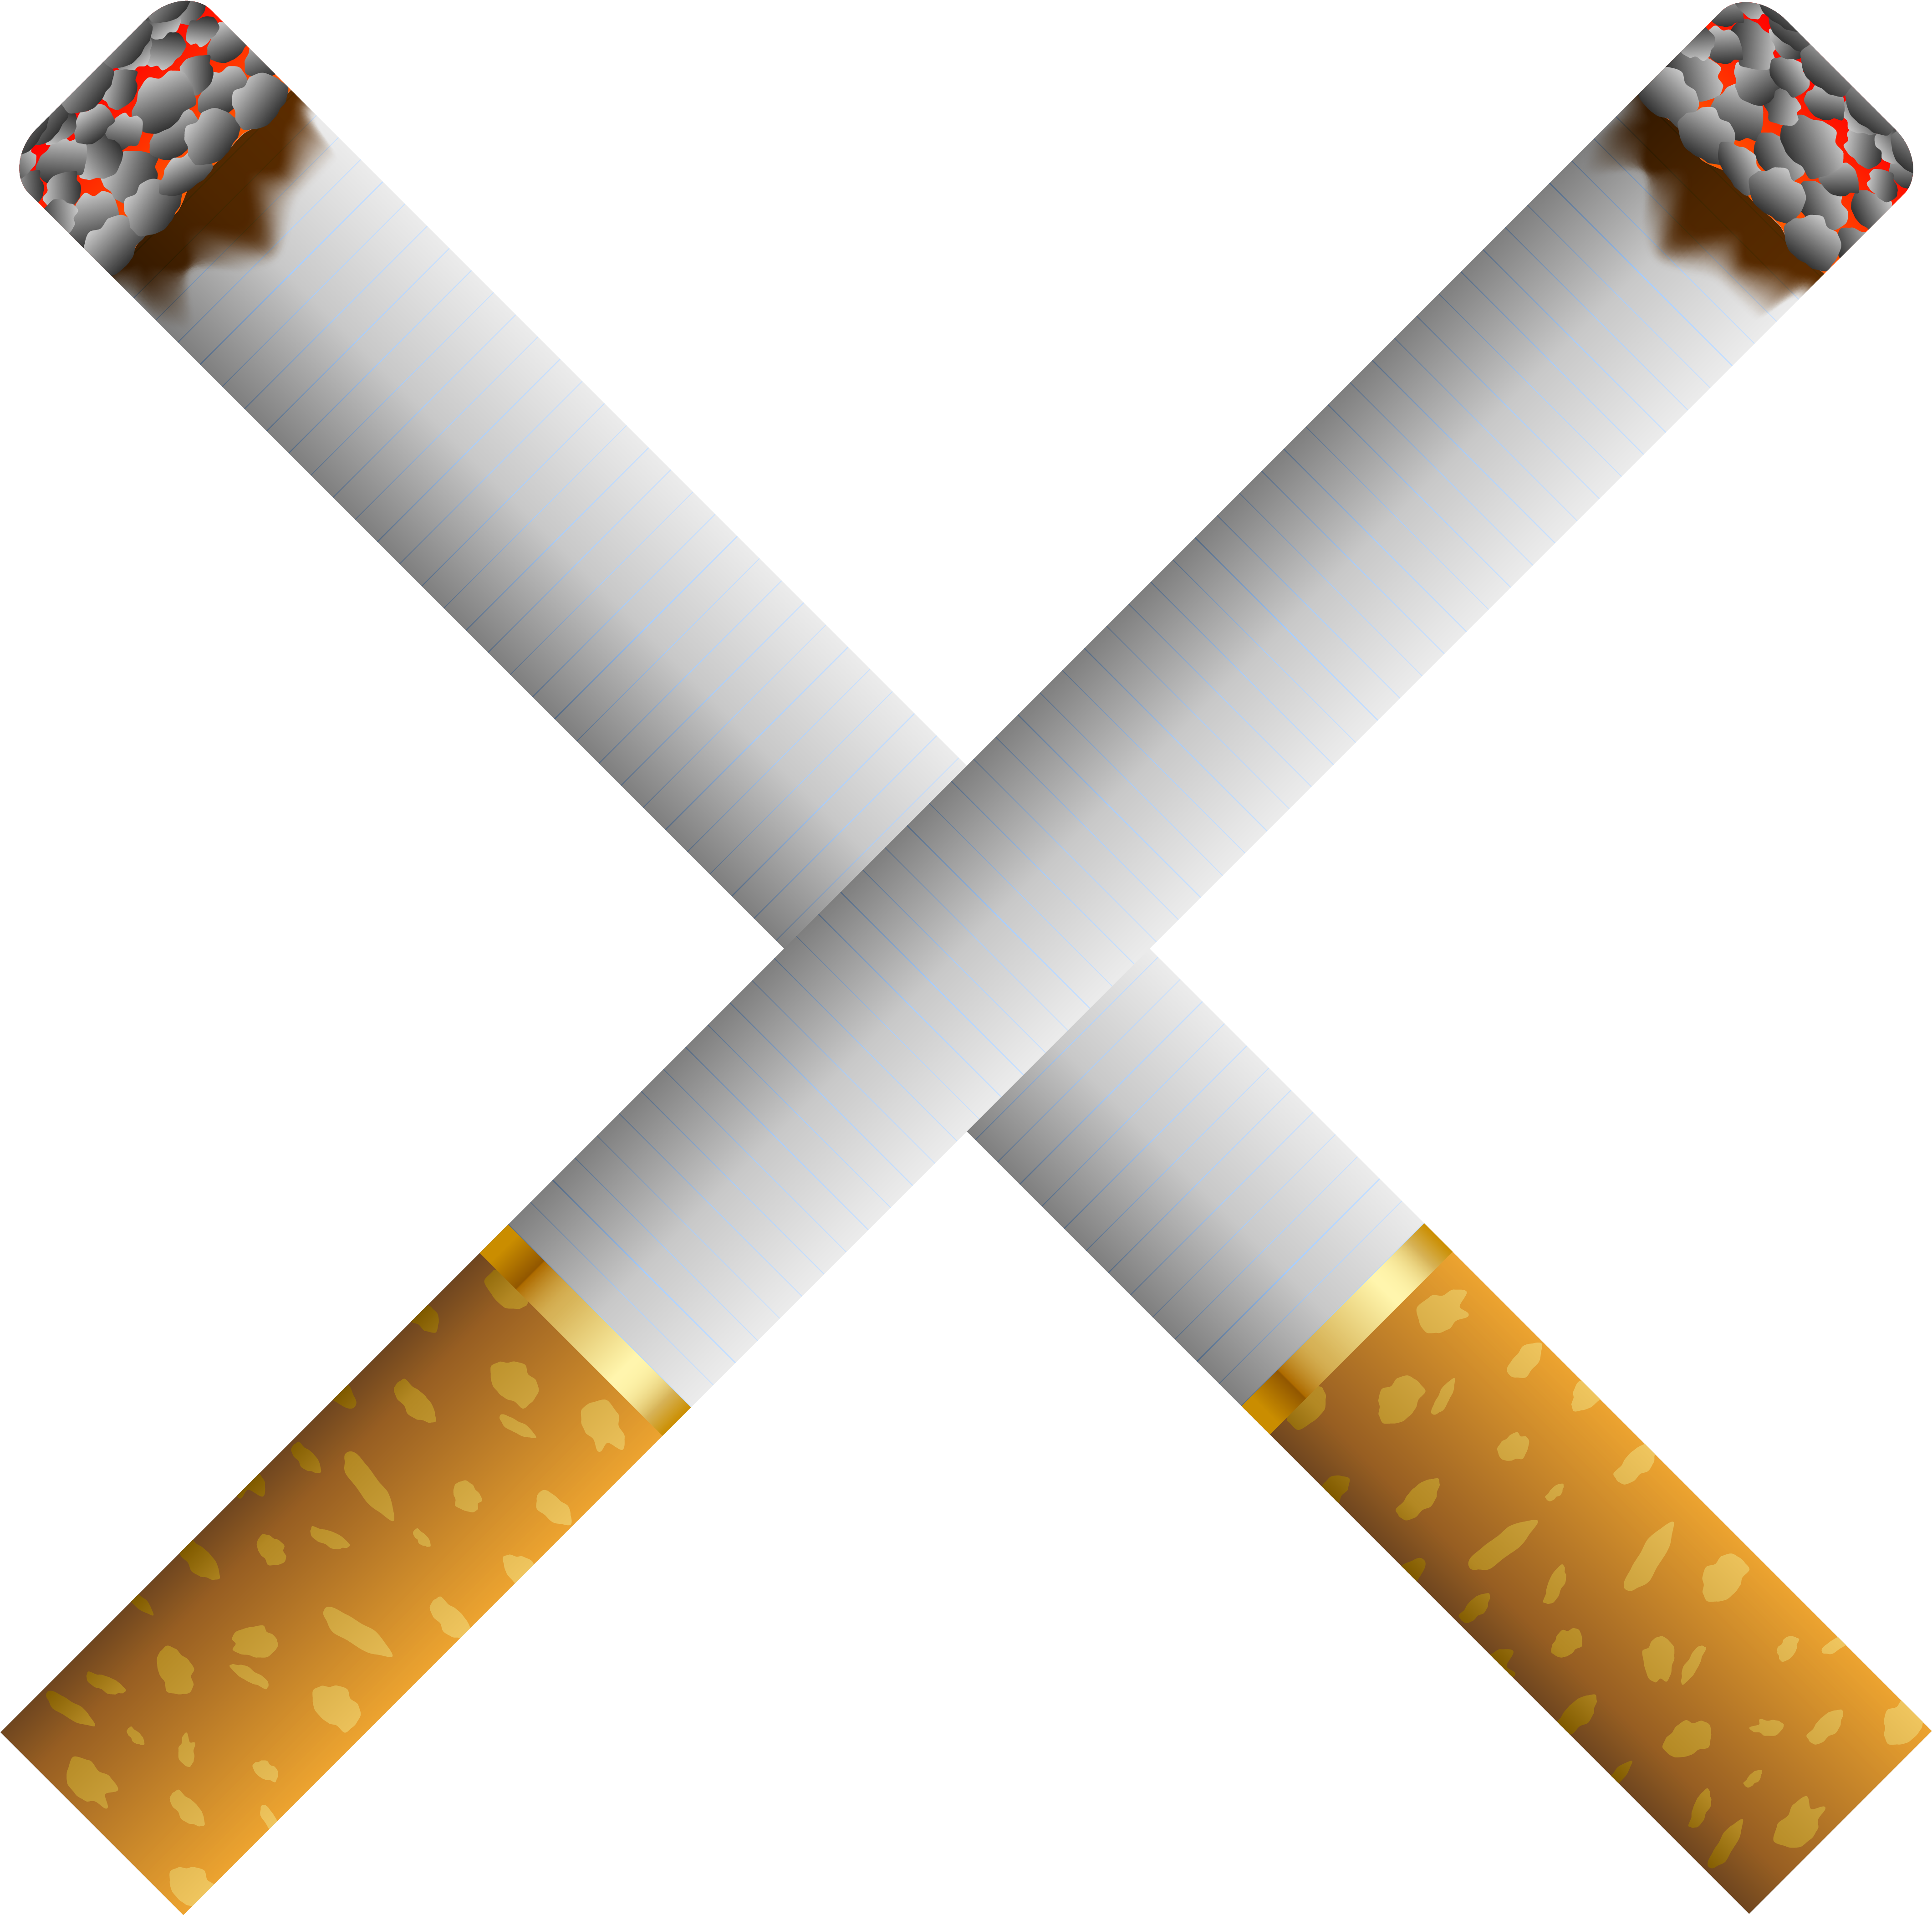 Tobacco Pipe Cigarette Pack Clip Art - Tobacco Pipe Cigarette Pack Clip Art (4348x4334)